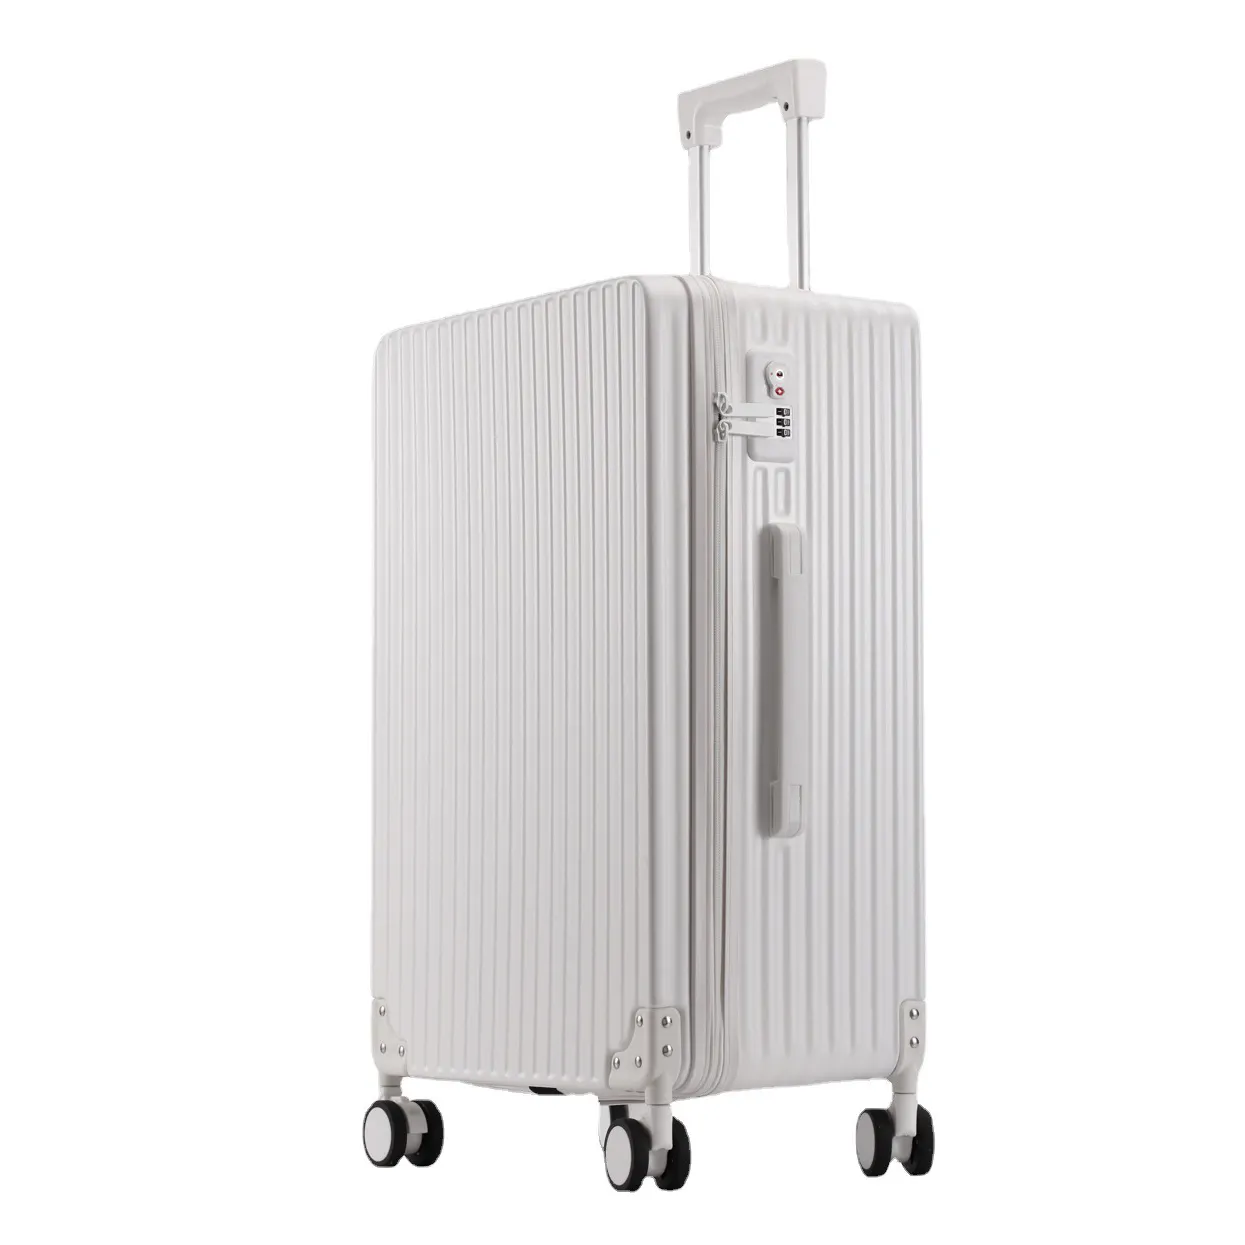 Yeni taşıma abs seyahat çantaları bagaj bayan için malzeme bagaj 3 adet arabası bavul valiz de voyage 3 adet setleri